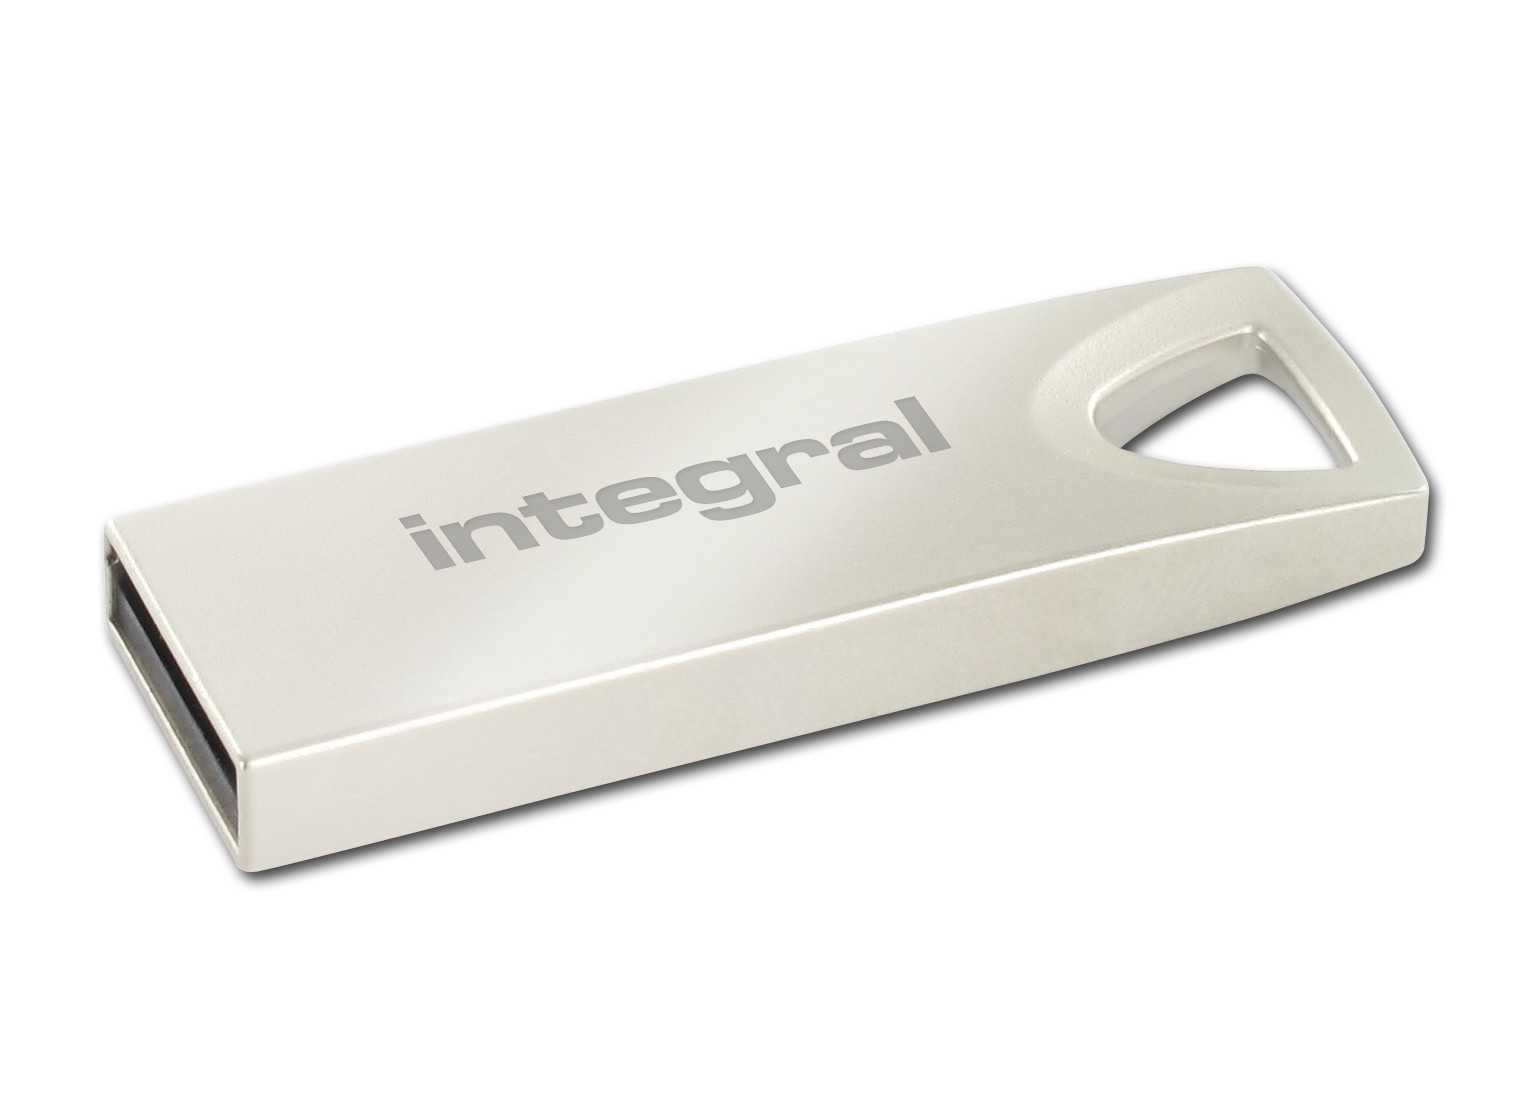 Clé USB 3.0 INTEGRAL Flash Drive Pastel 16 GB (Bleu)